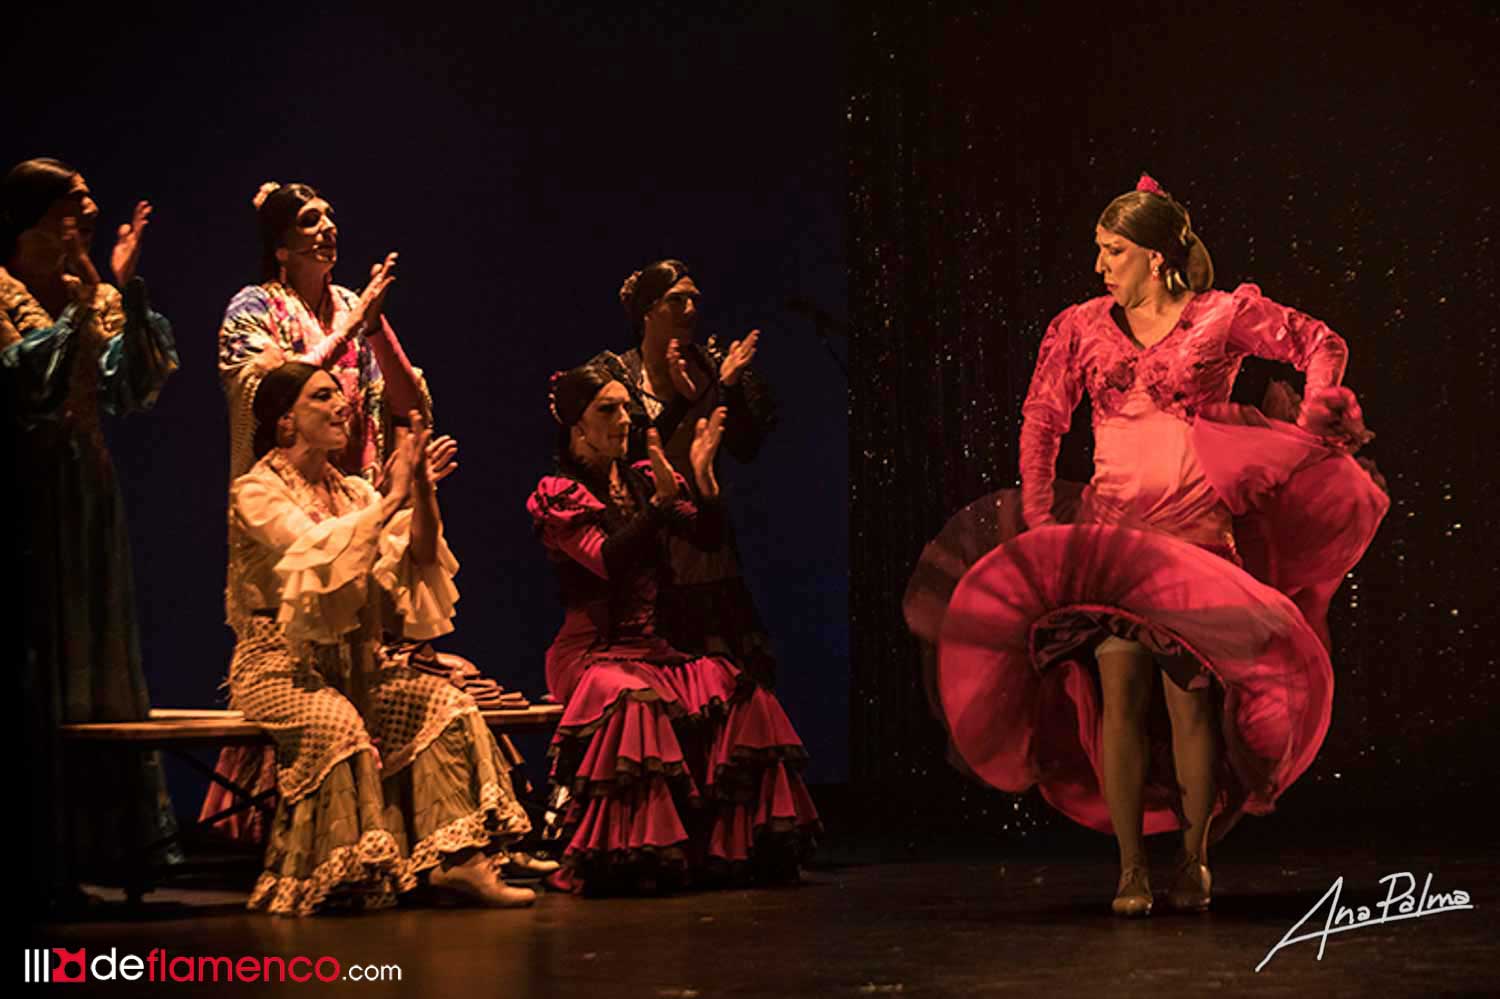 Liñán, orgullo de flamenco